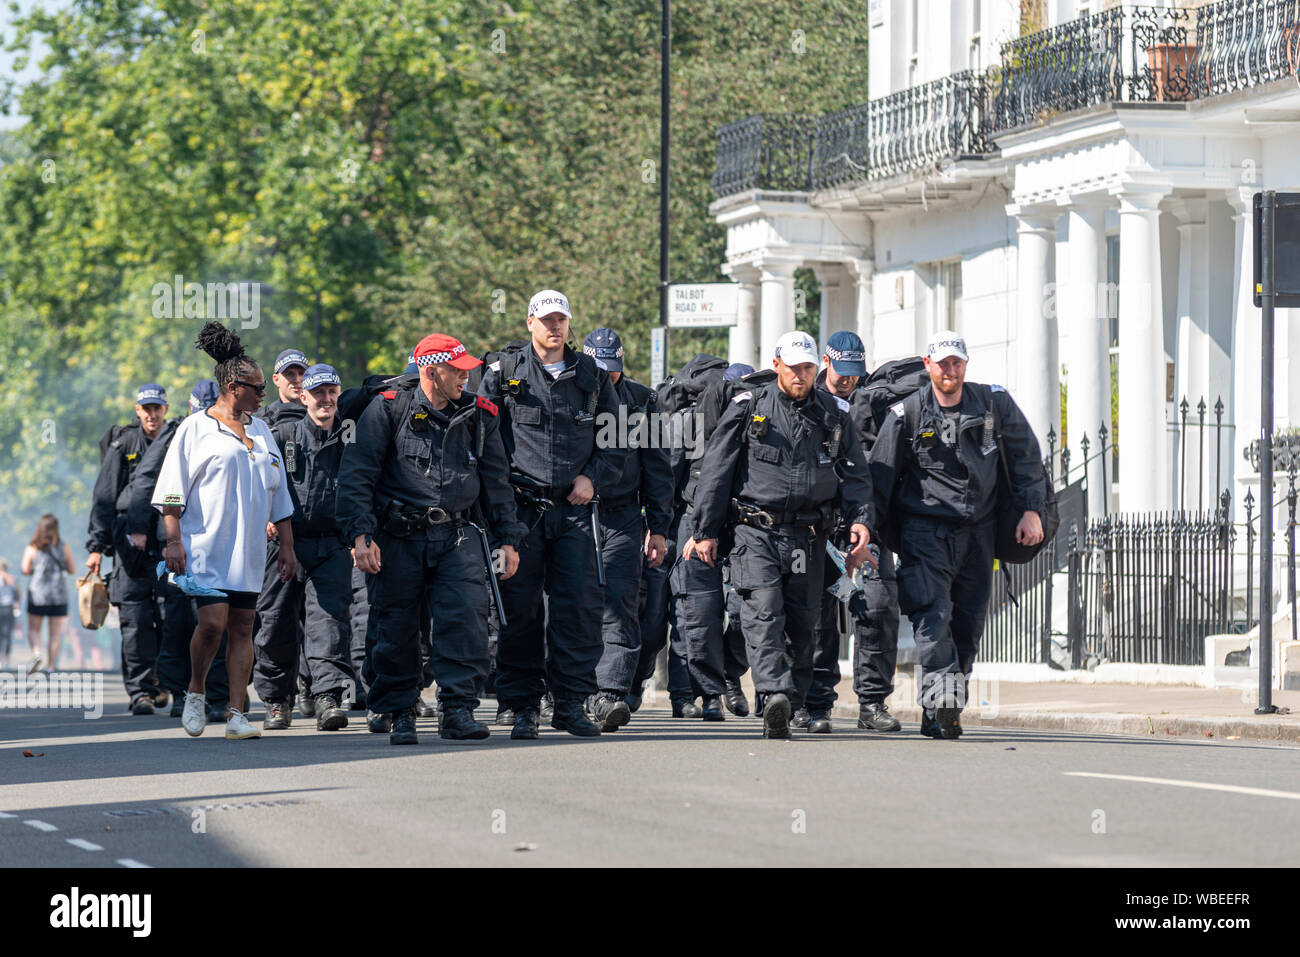 Llegan refuerzos policiales en el Carnaval de Notting Hill desfile final en un caluroso día festivo el lunes. El número de oficiales de policía de llegar Foto de stock